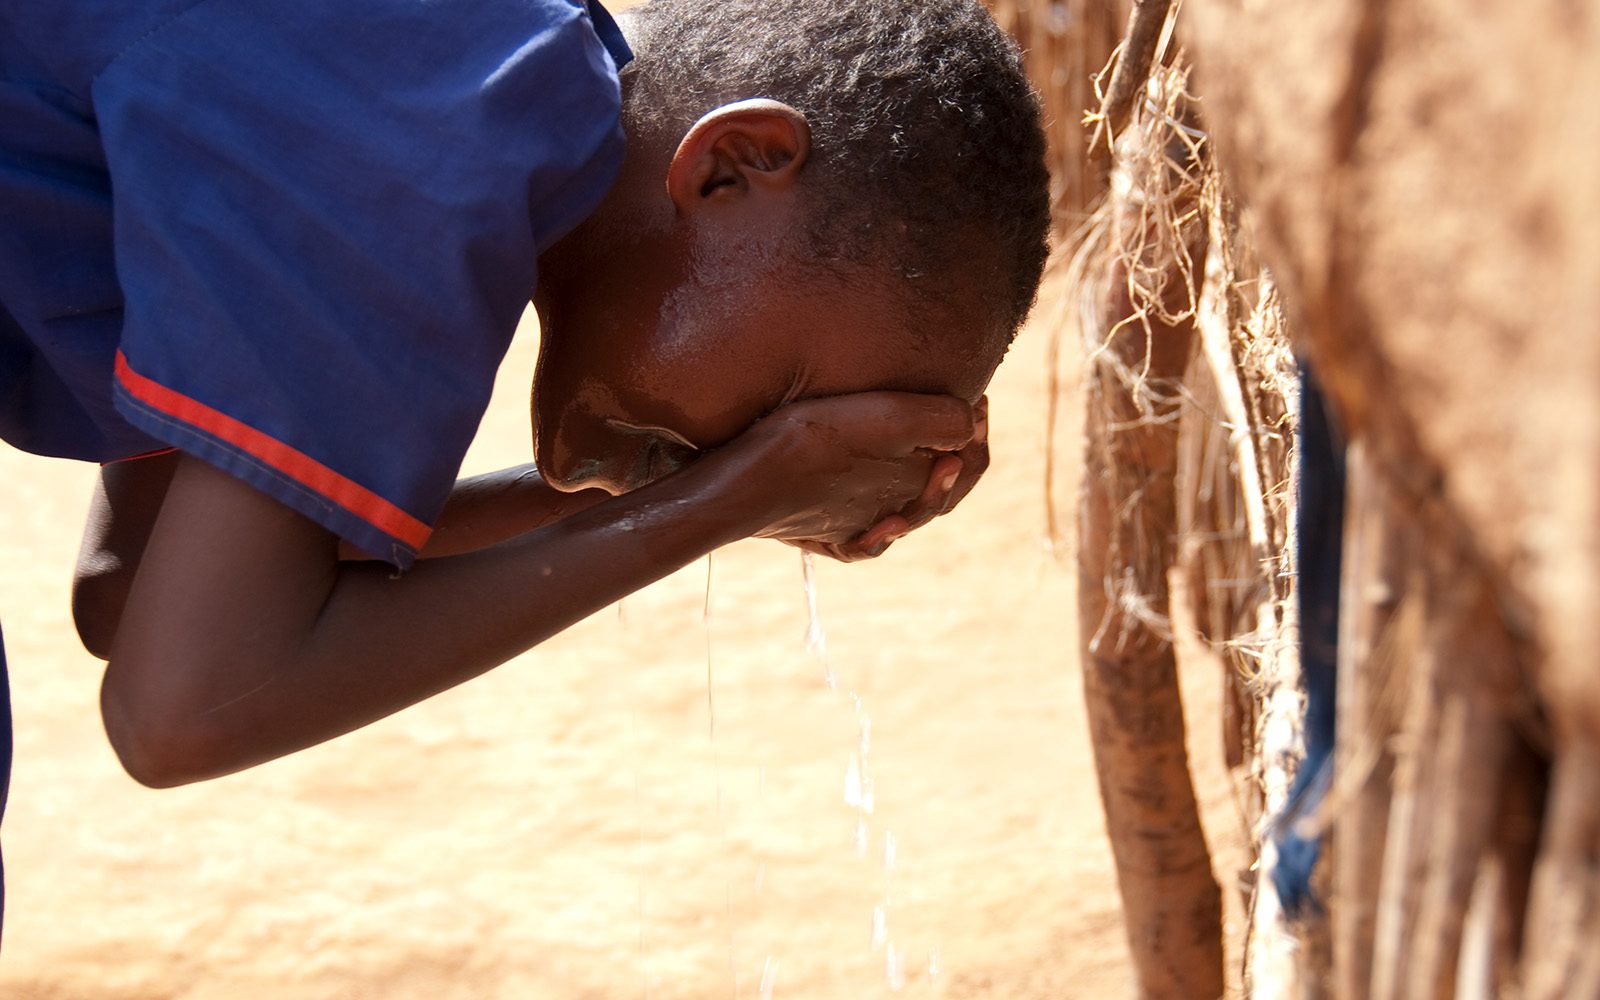 Kenya Simila washing her face